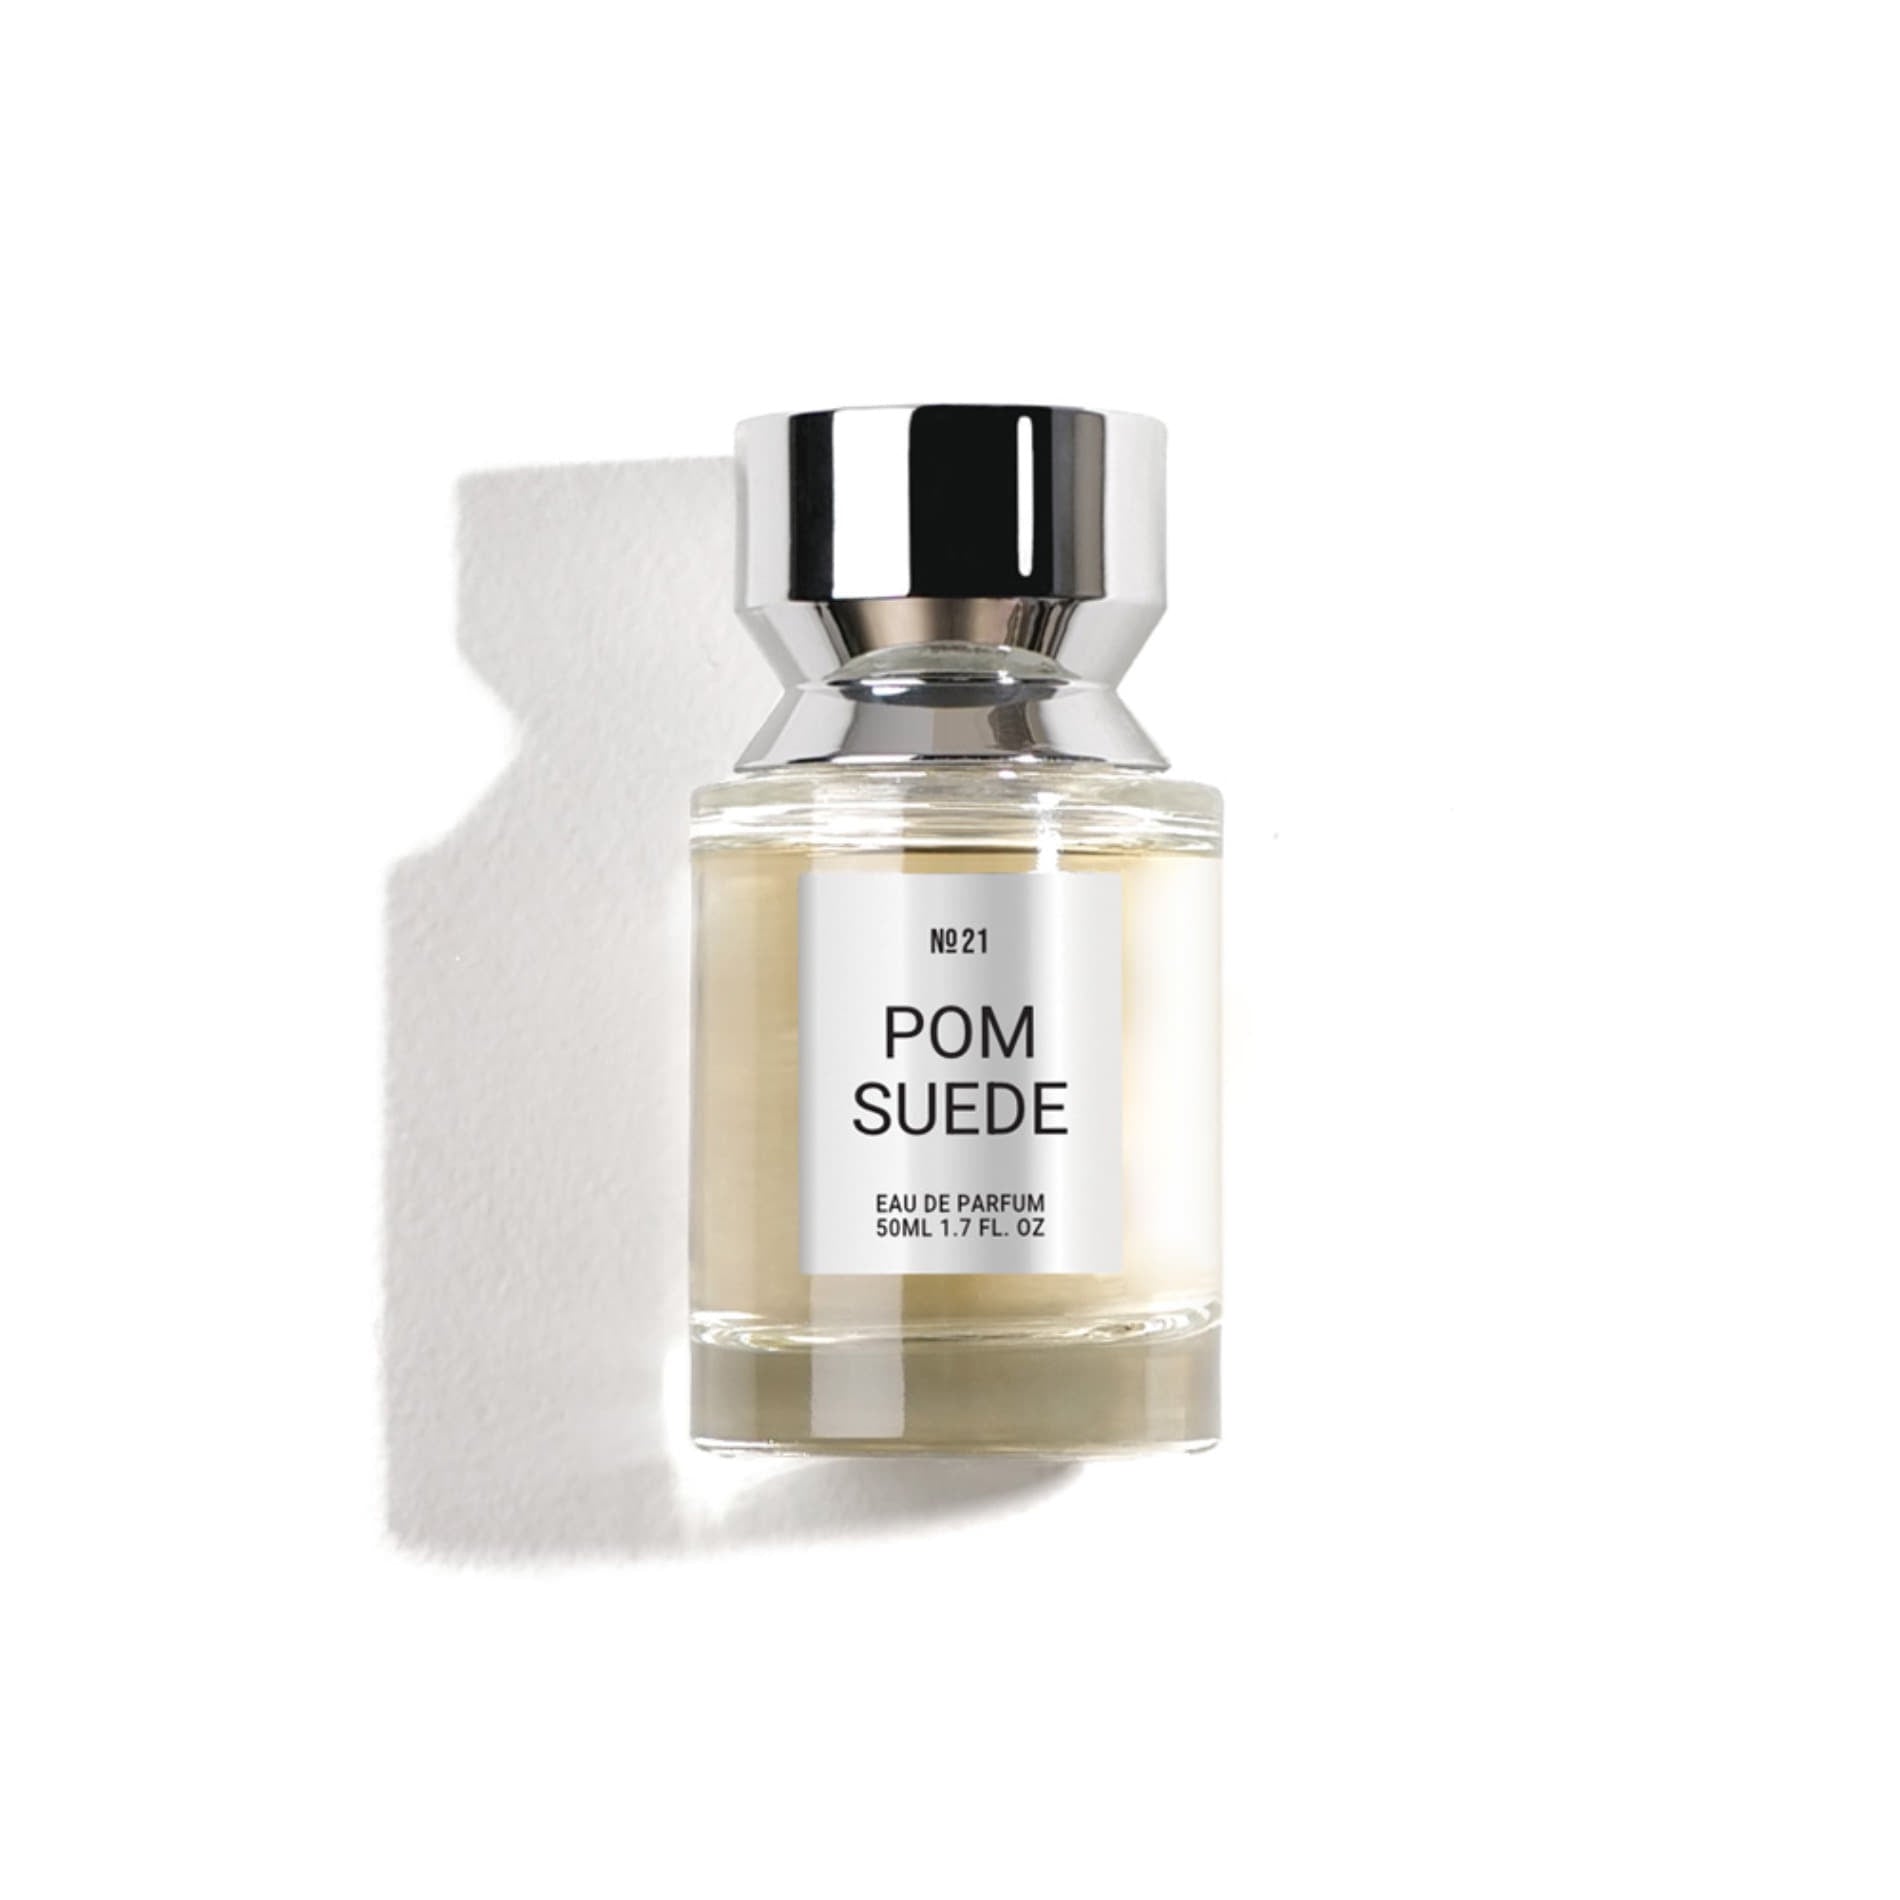 SWG - Eau De Parfum - Pom Suede No.21 - Korea Cosmetics BN